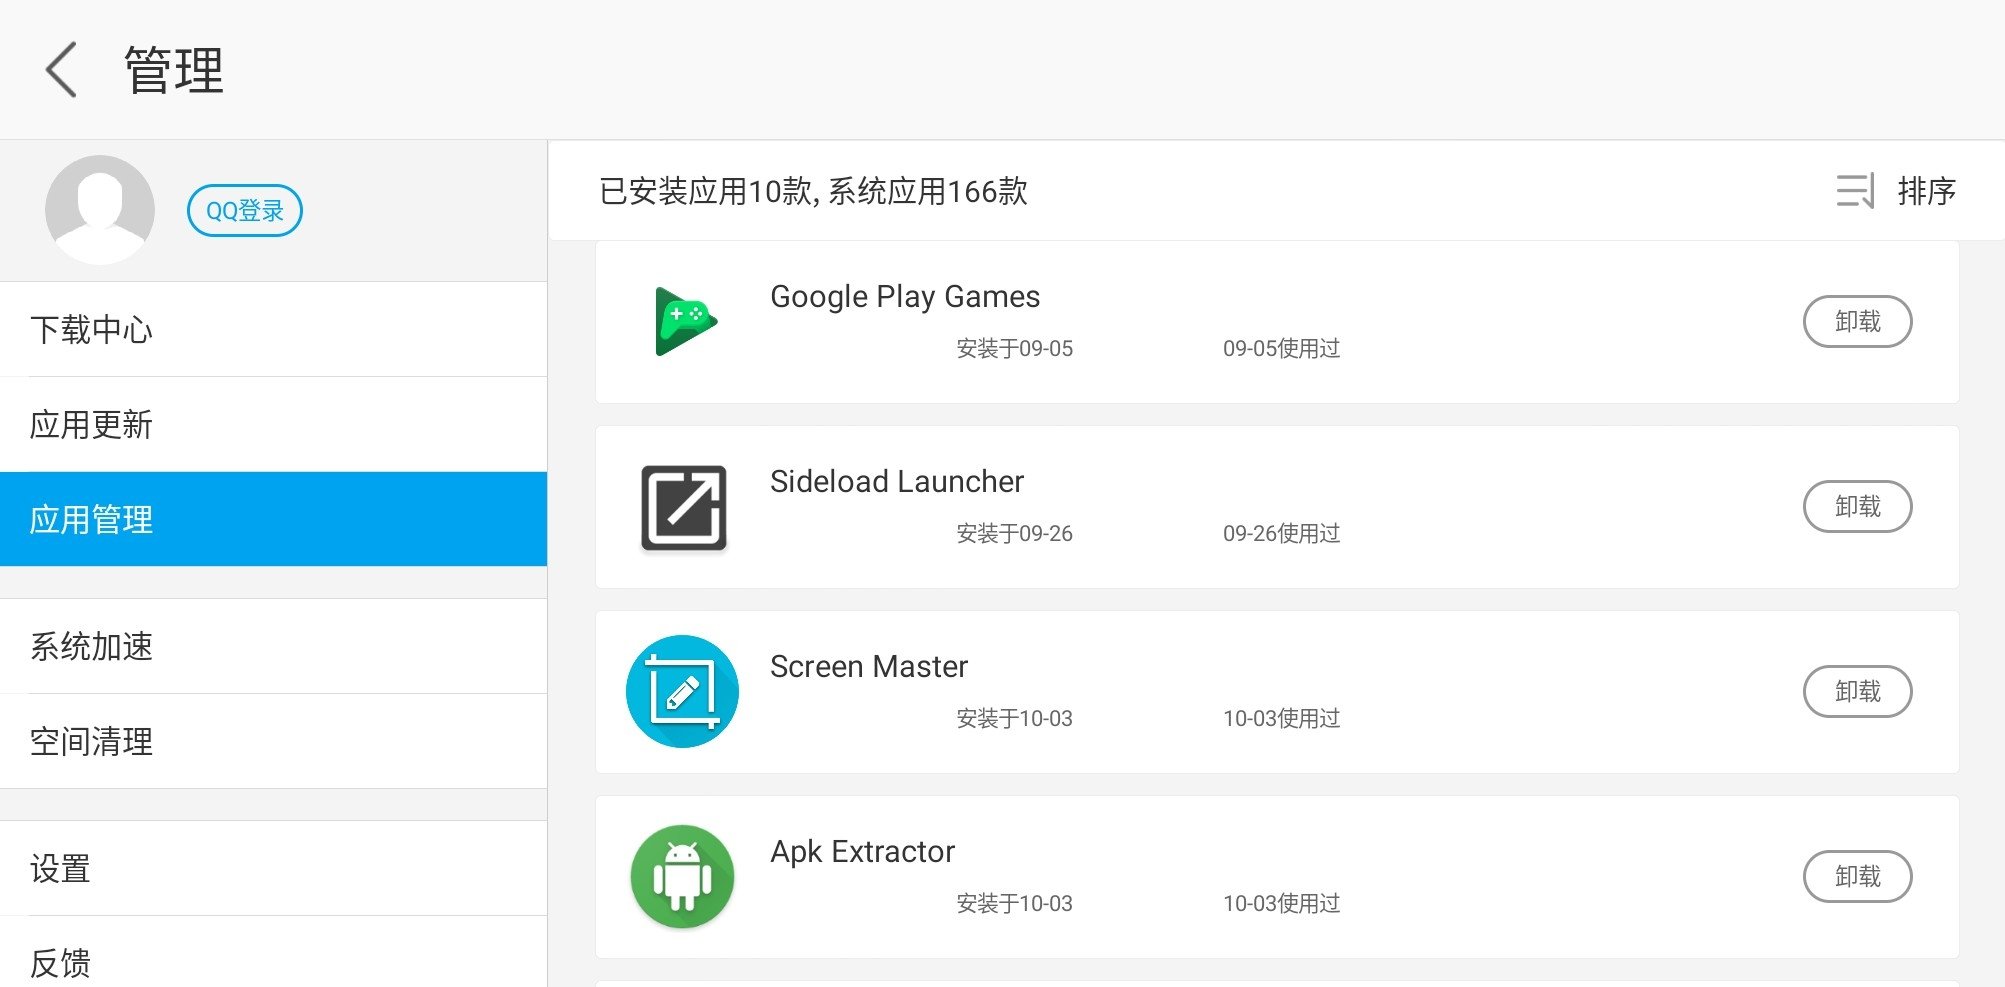 Tải xuống ứng dụng Tencent My App APK: Tận hưởng trọn vẹn trải nghiệm của ứng dụng Tencent My App, chỉ với một cú nhấp chuột tải xuống phiên bản APK miễn phí. Hãy tải ngay và khám phá thế giới ứng dụng miễn phí đầy đủ tính năng tiện ích của chúng tôi.